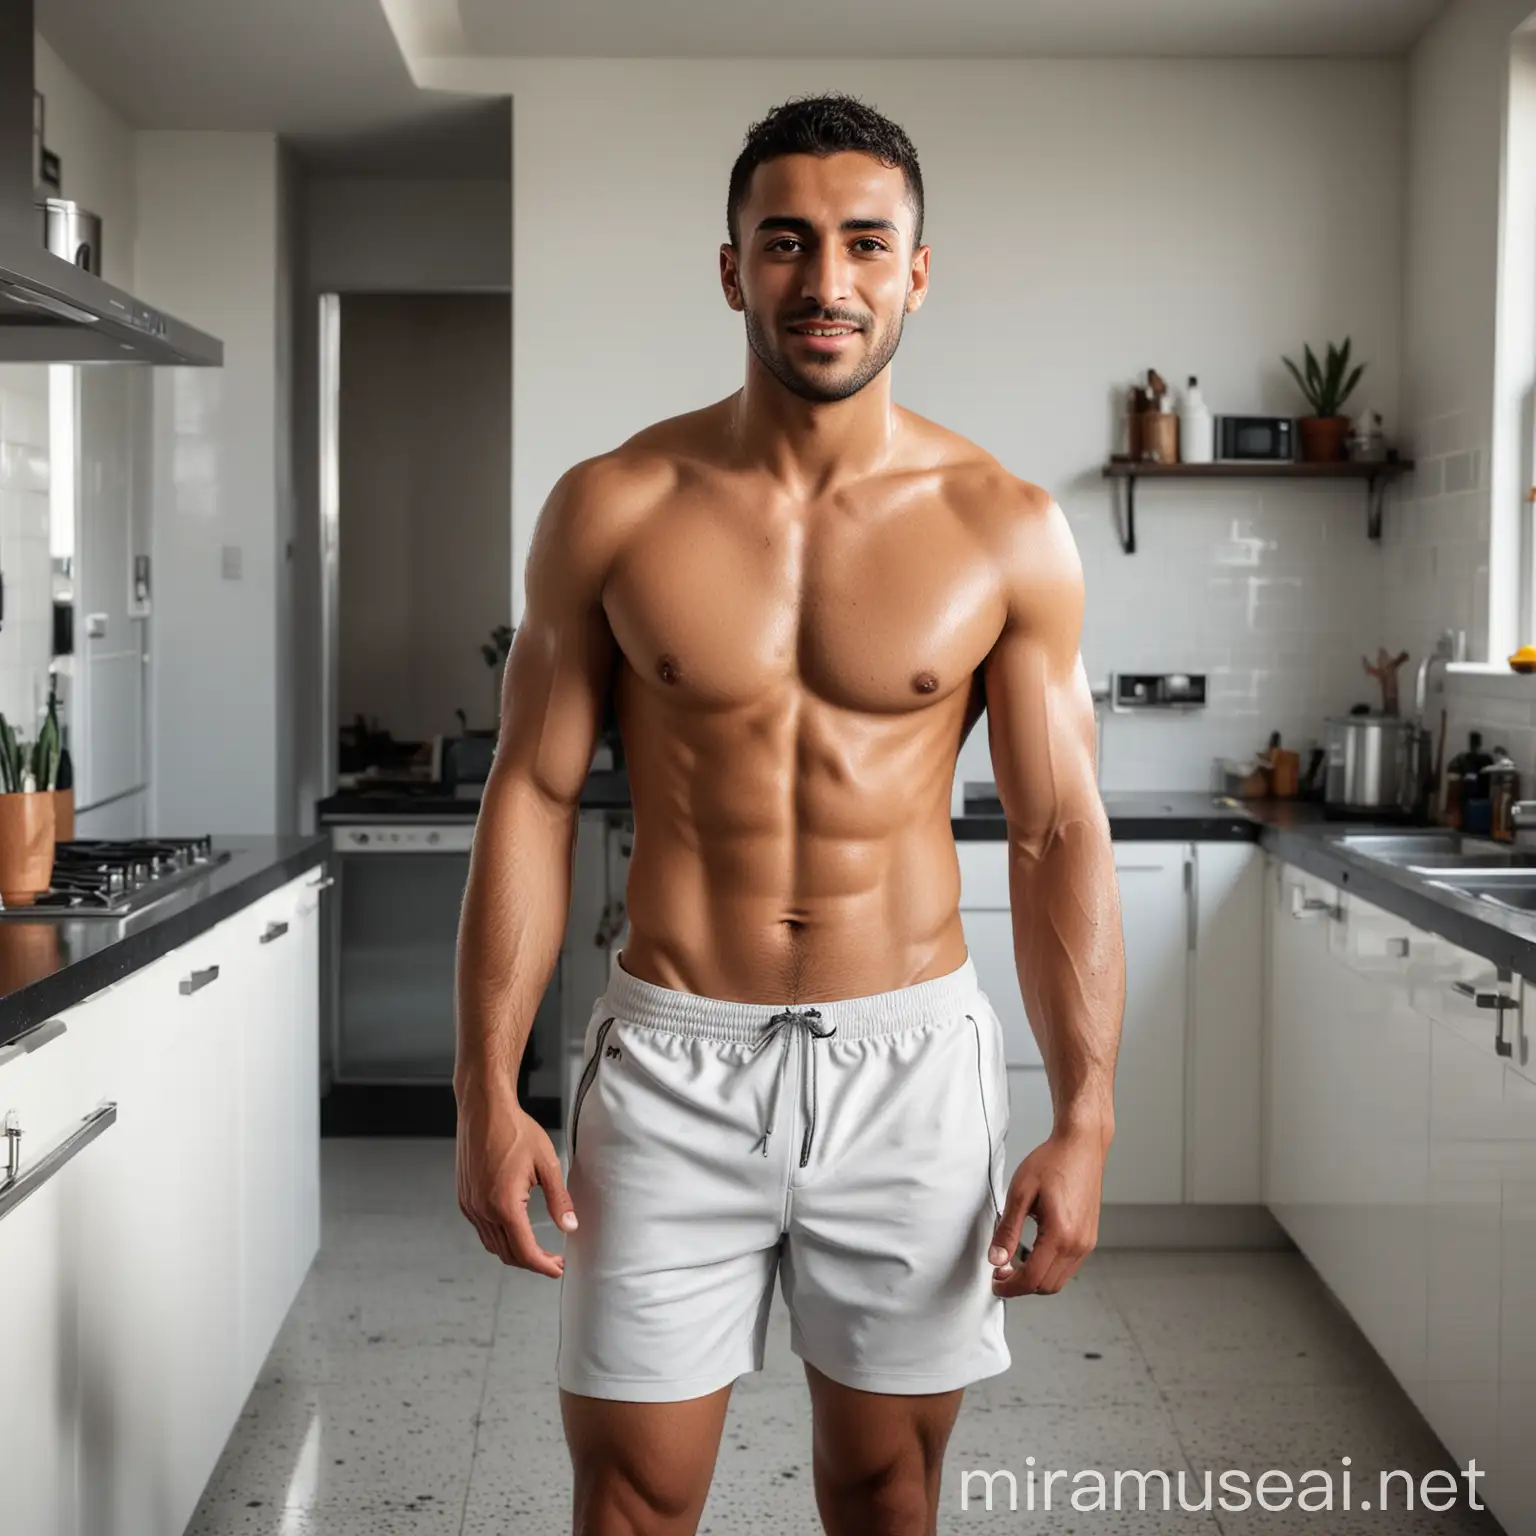 Confident Arabic Male Runner in Futuristic Kitchen